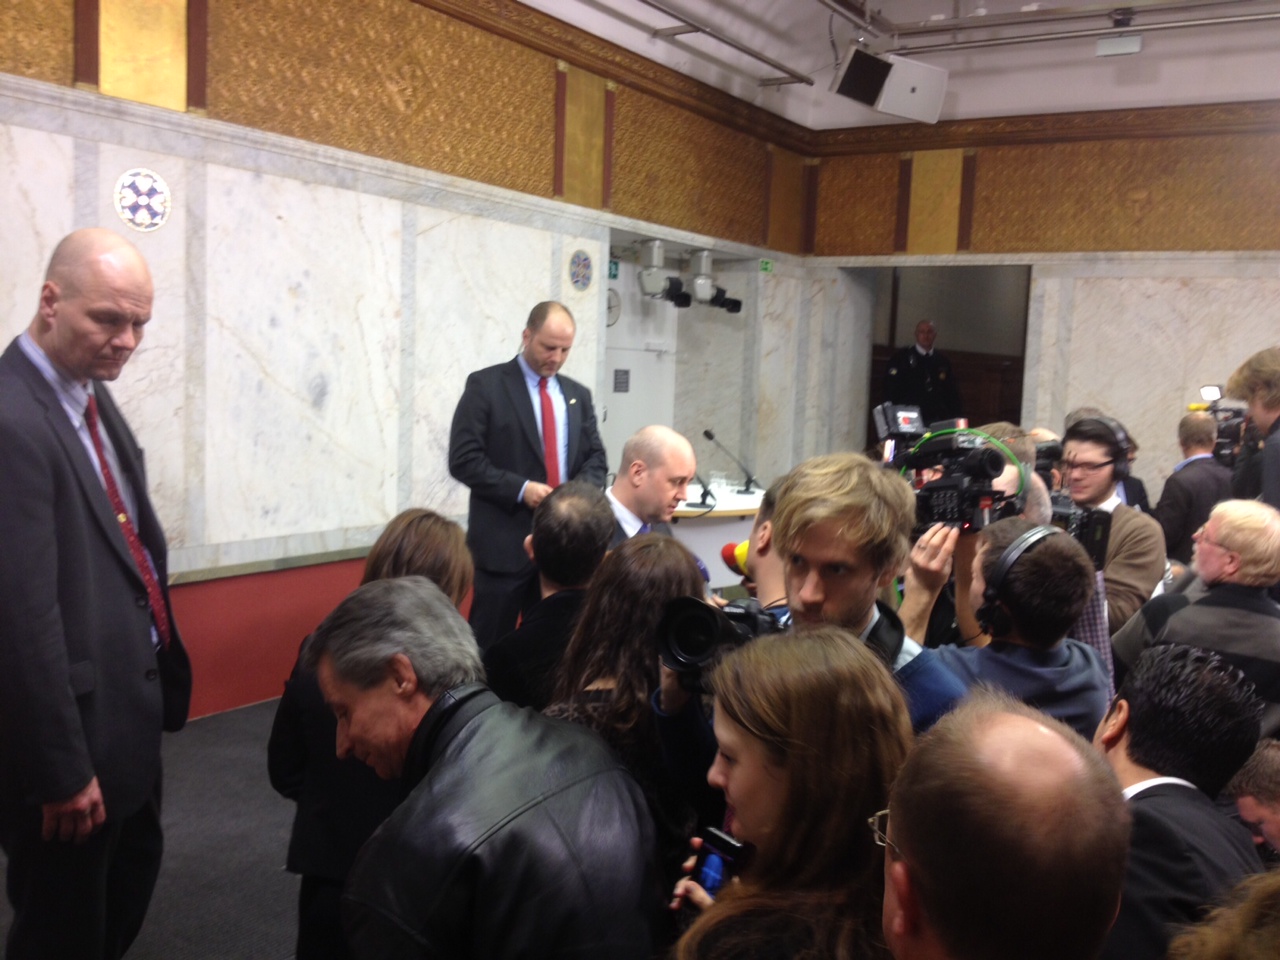 Tolgfors sa under presskonferensen att han blivit utsatt för ett mediedrev.